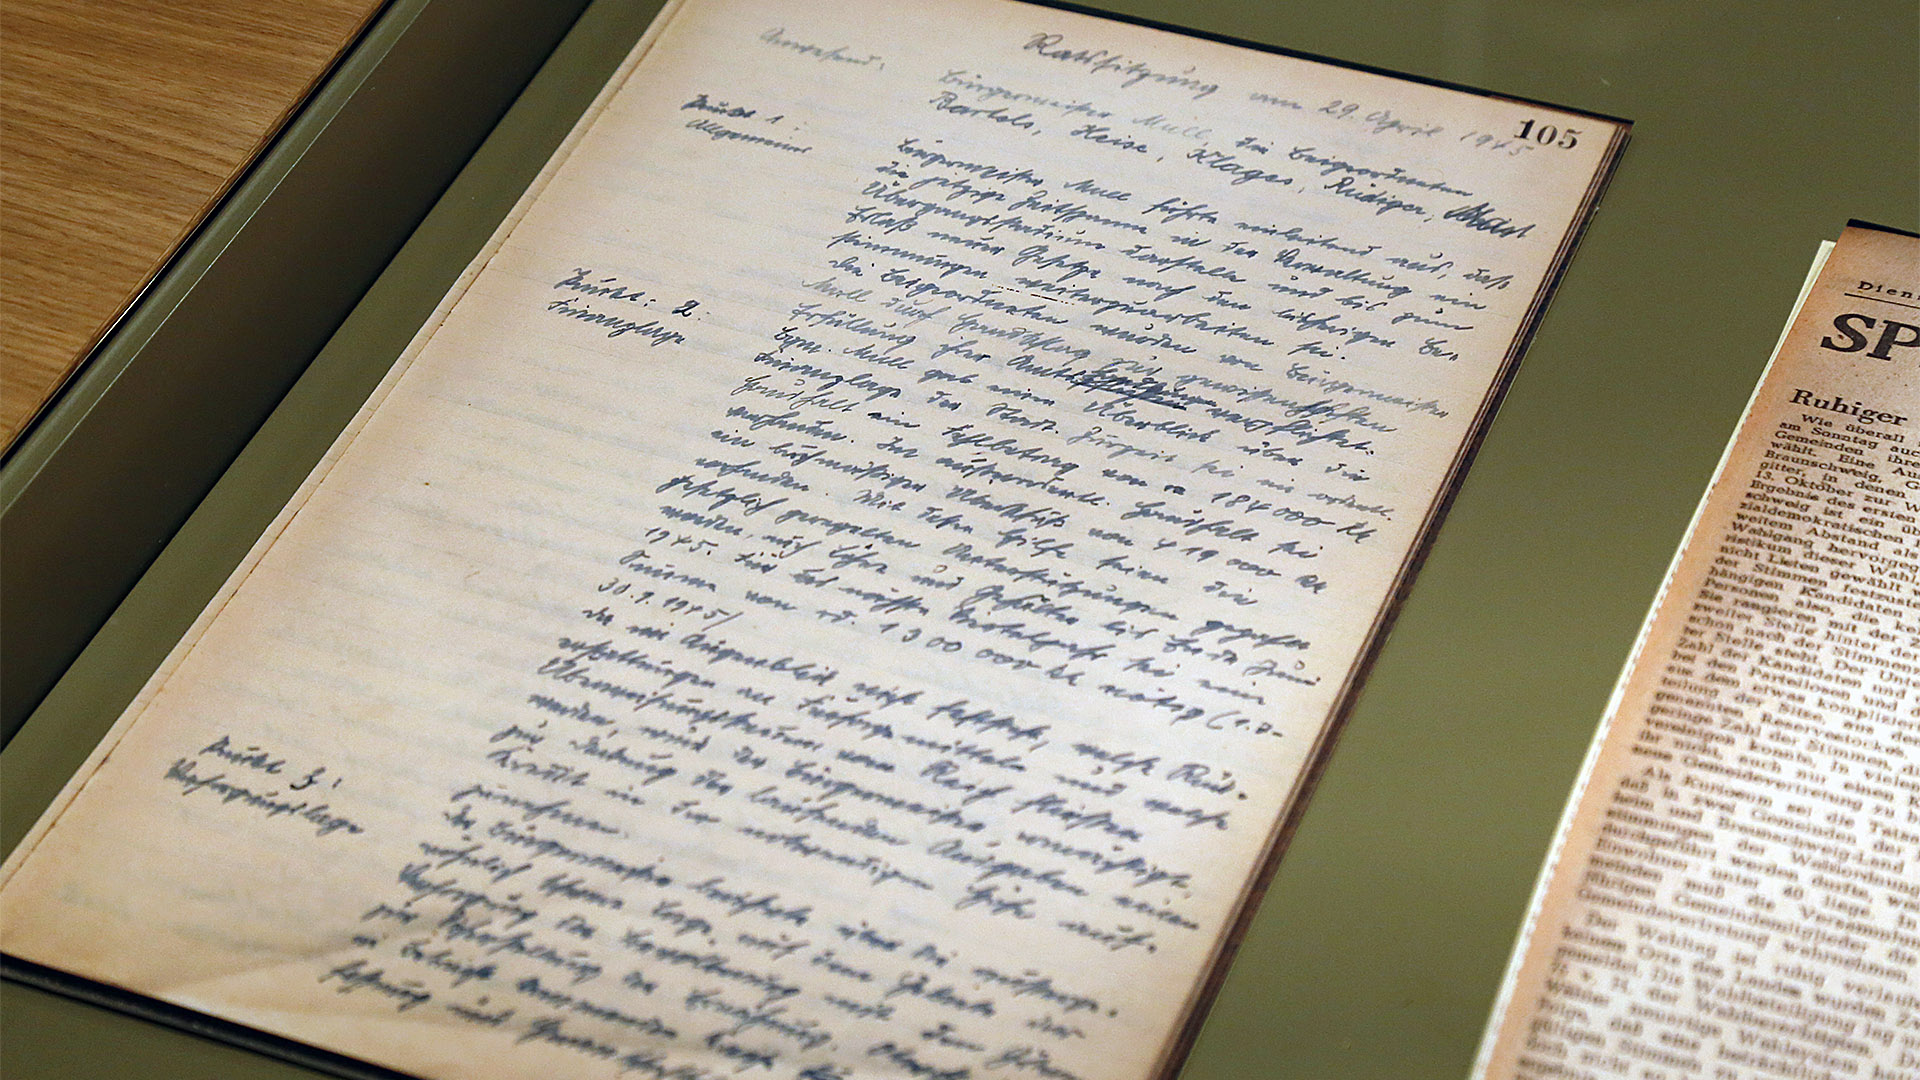 Auf dem Bild ist ein großer handschriftlicher Zettel zu sehen. Es handelt sich um ein Sitzungsprotokoll vom ersten Treffen Wolfenbütteler Politiker nach Ende des Zweiten Weltkrieges. Es fand am 29. April 1945 statt.